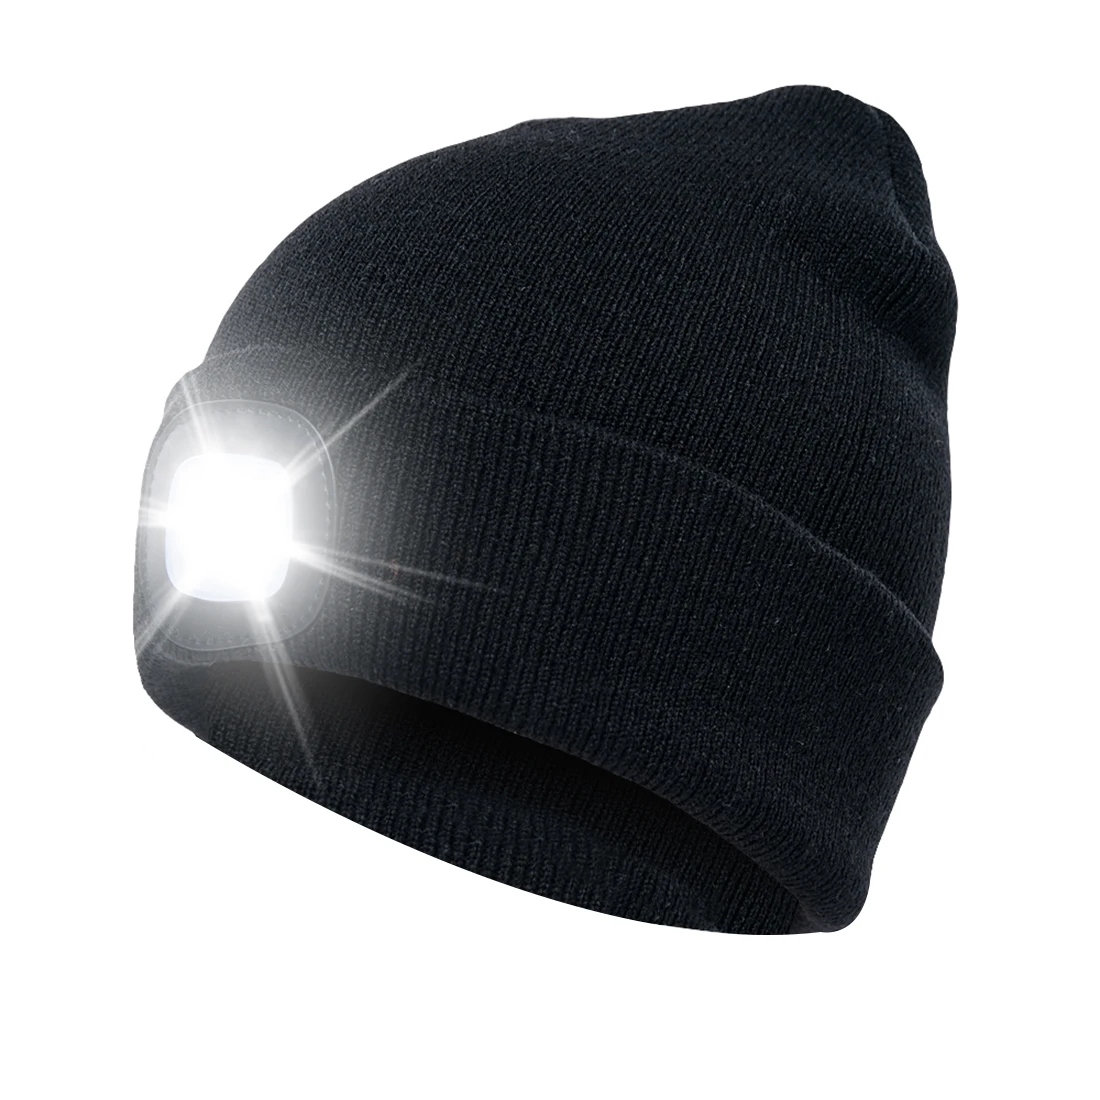 Светодиодный светильник, шапка с зарядкой от USB, свободные руки, шапка с фонариком светодиодный шапочки, вязаная шапка, сохраняющая тепло зимой для альпинизма, рыбалки на открытом воздухе - Цвет: black